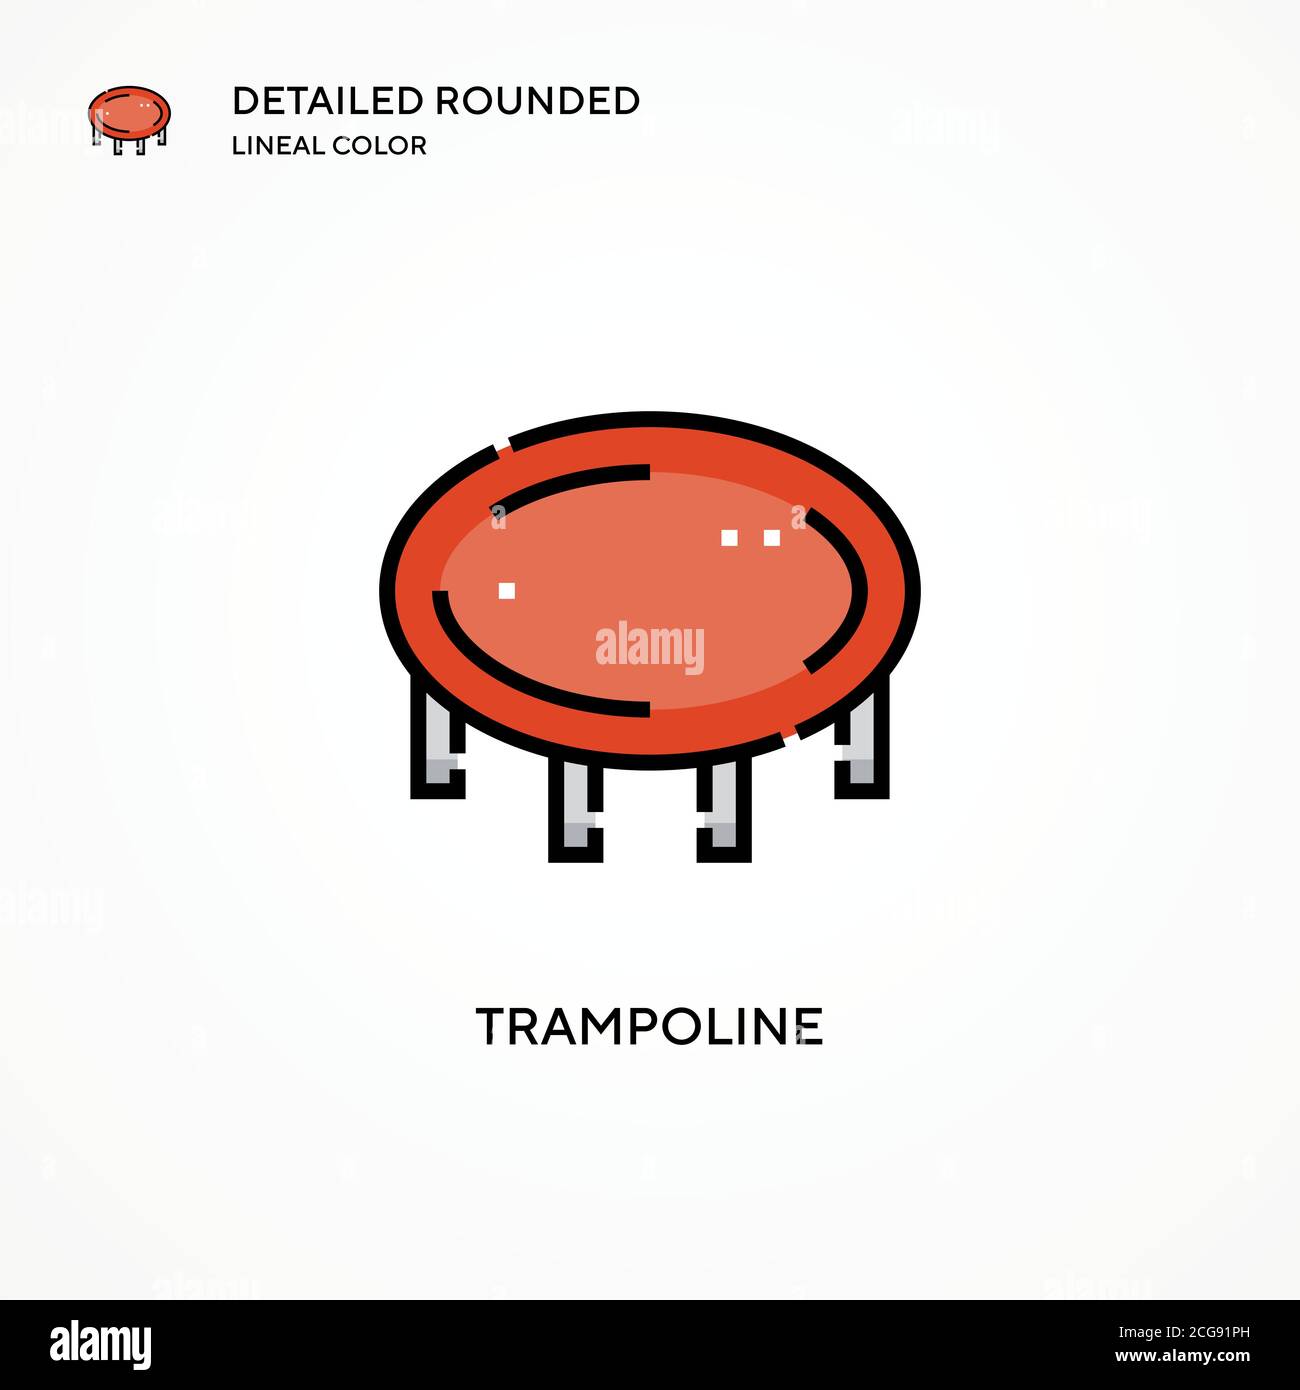 Jumping trampoline icon illustration design Banque d'images détourées -  Alamy